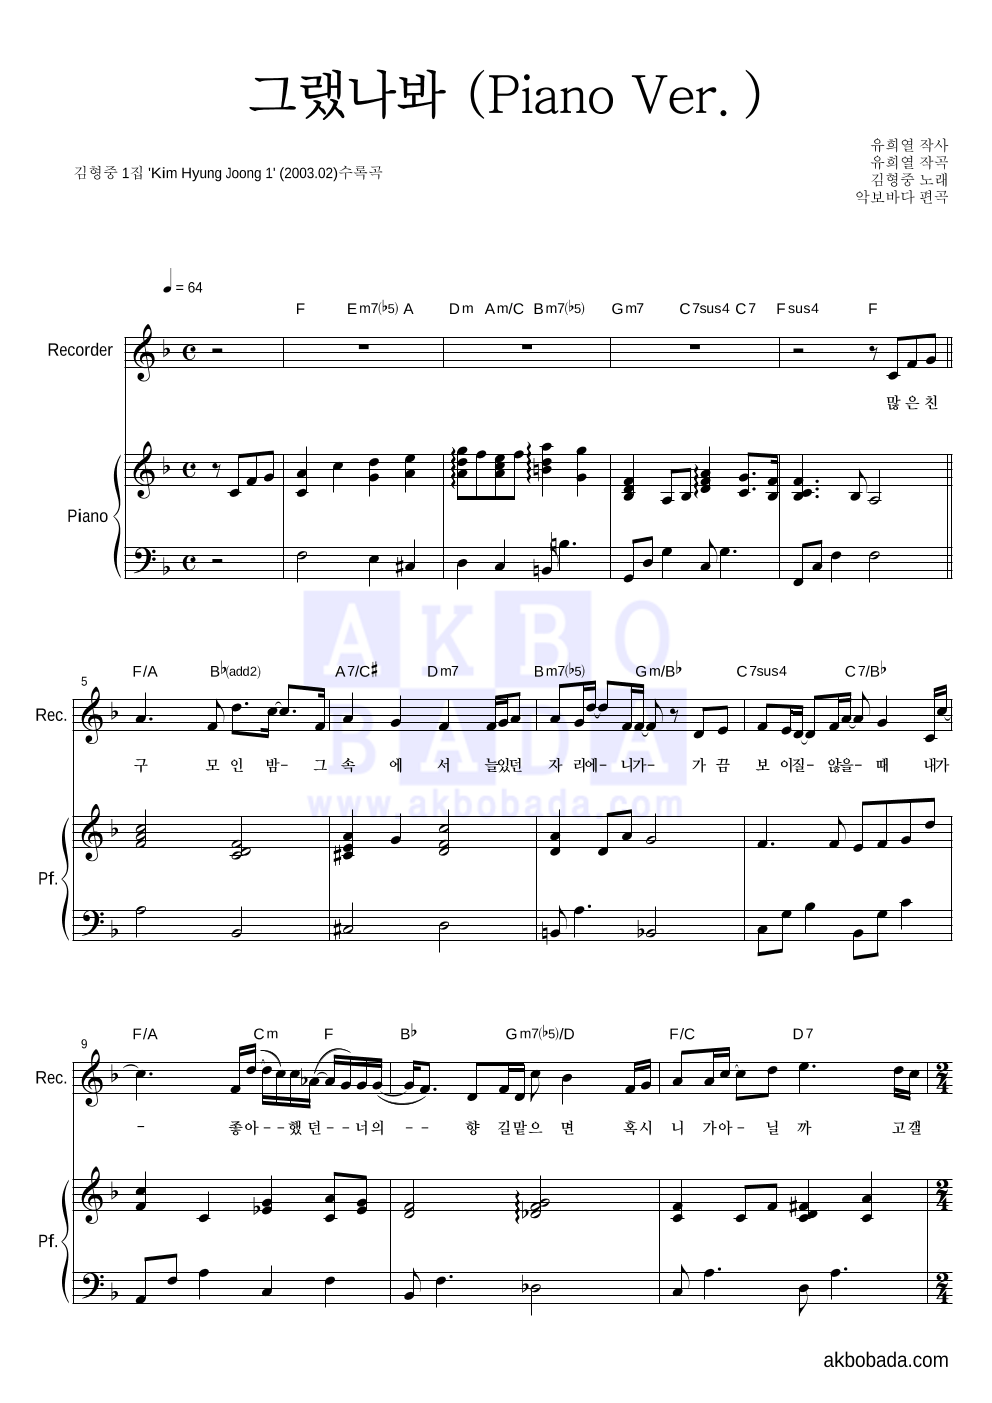 김형중 - 그랬나봐 (Piano Ver.) 리코더&피아노 악보 